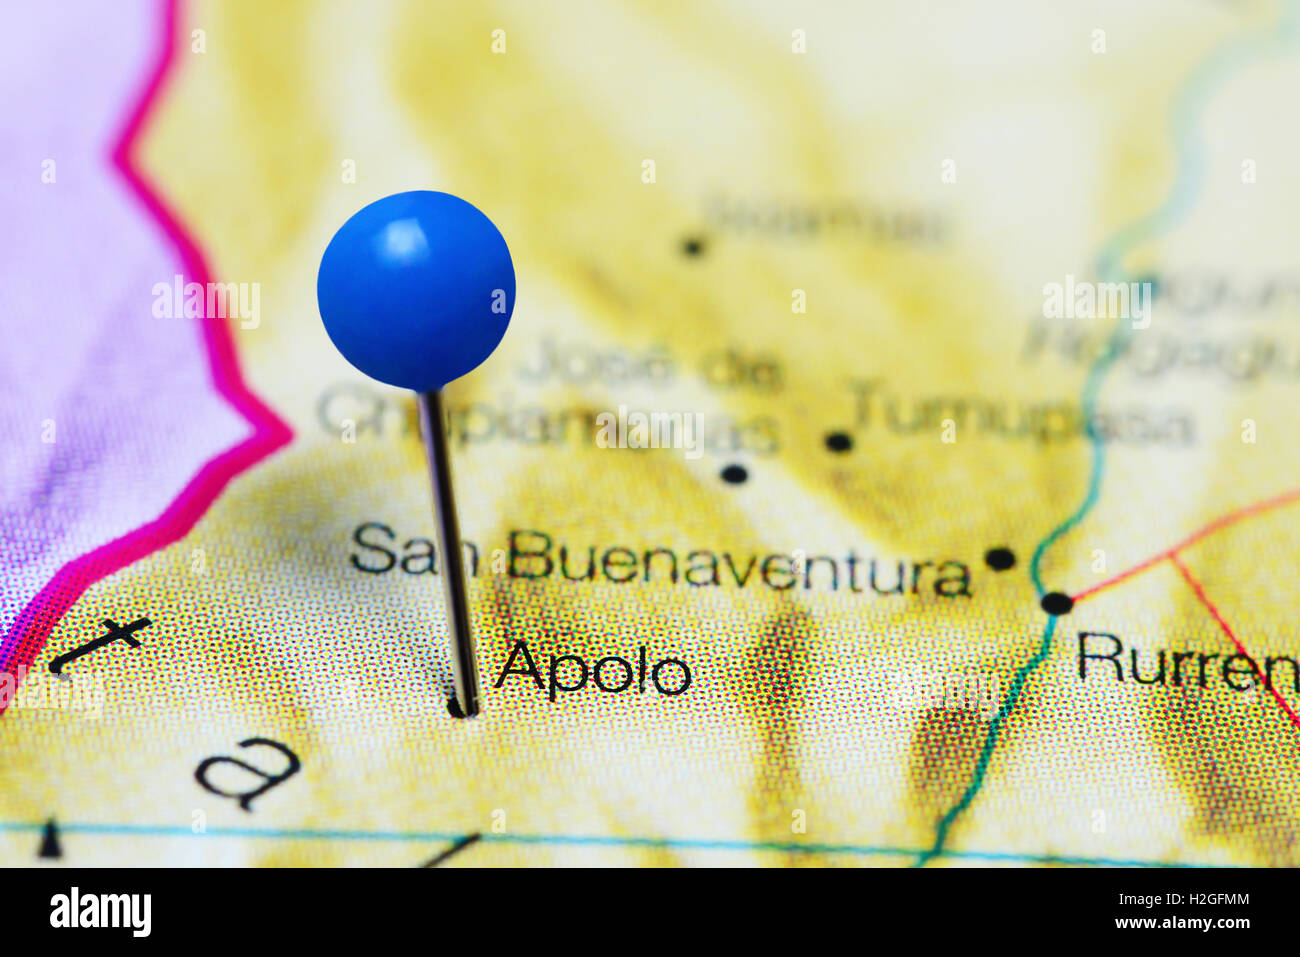 Apolo coincé sur une carte de la bolivie Banque D'Images